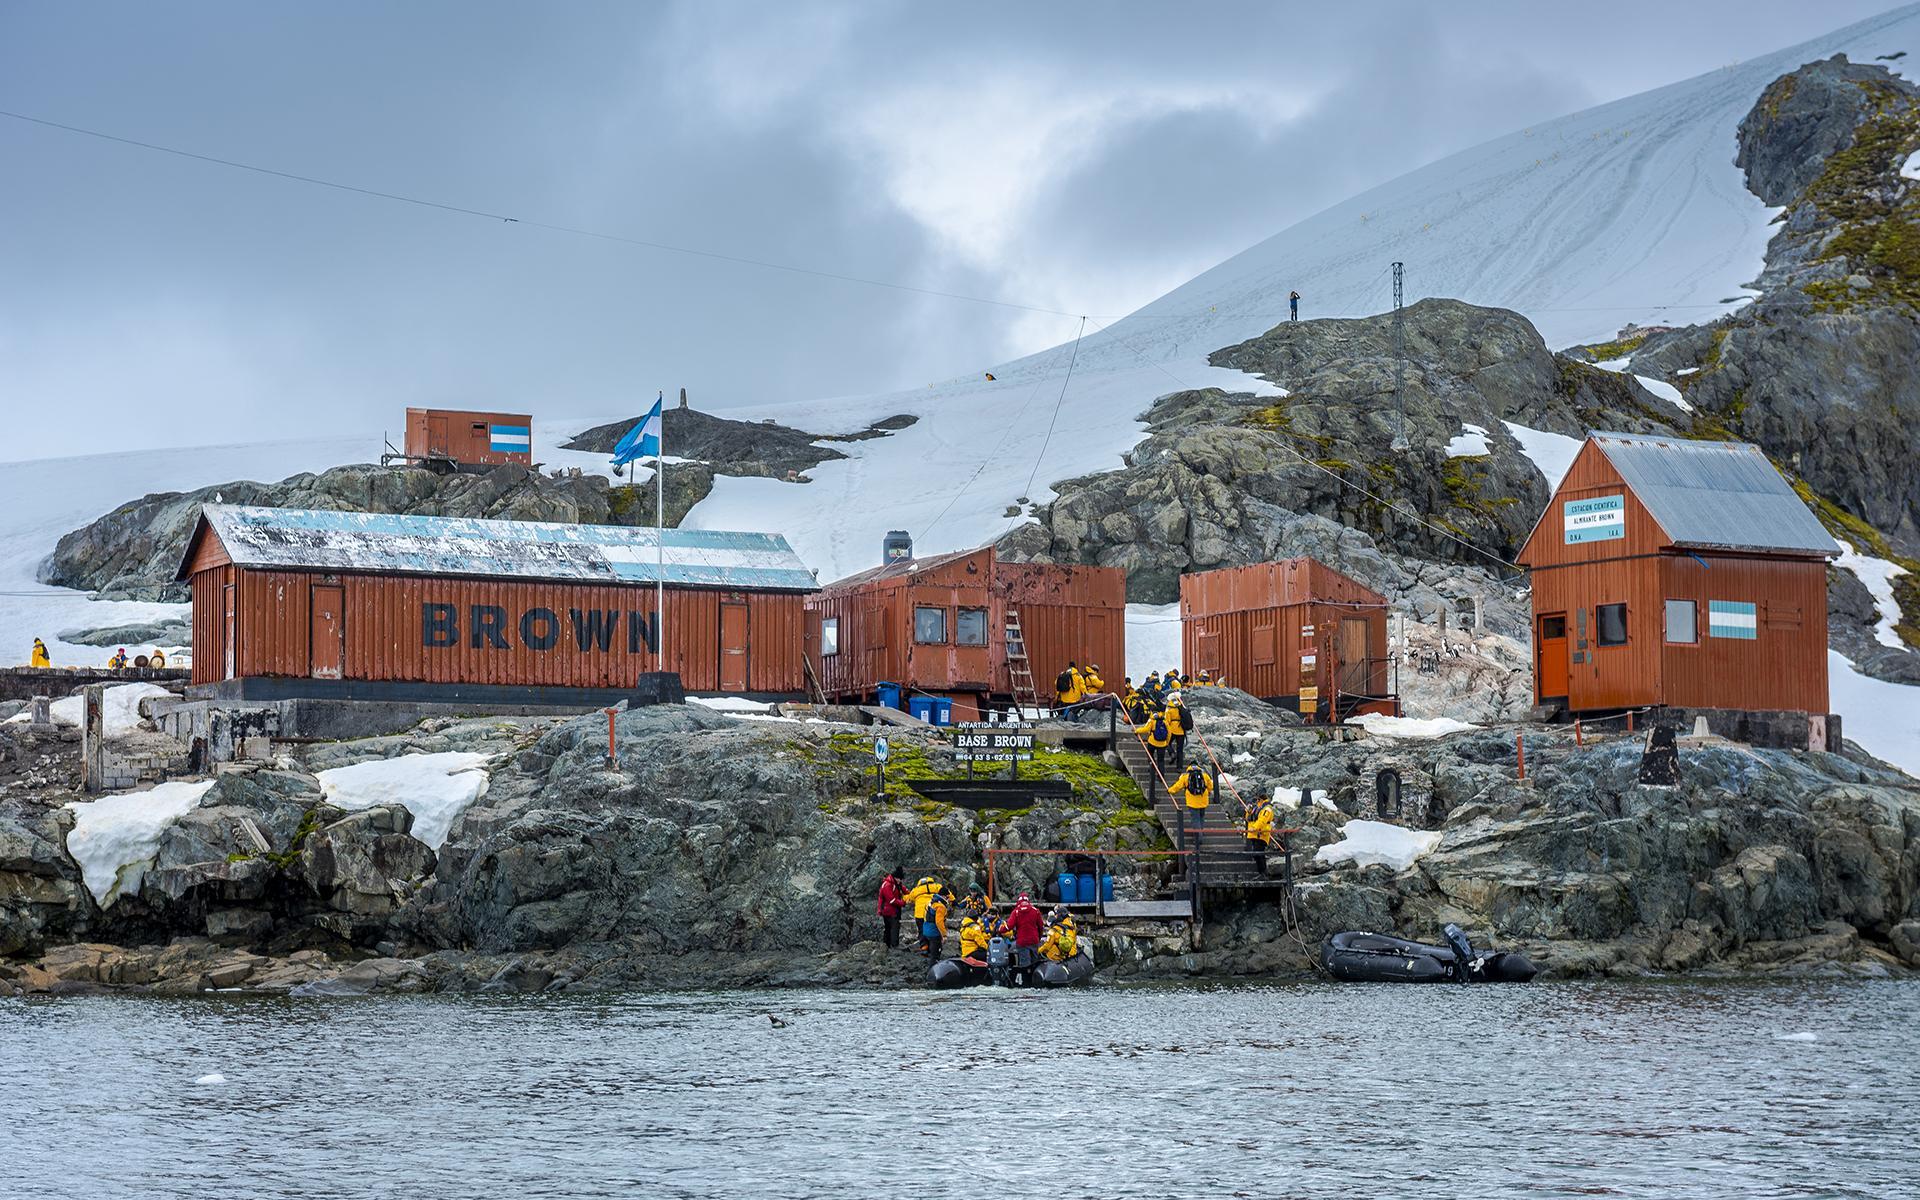 Albert's Antarctica Adventure: Base Brown at Paradise Harbor